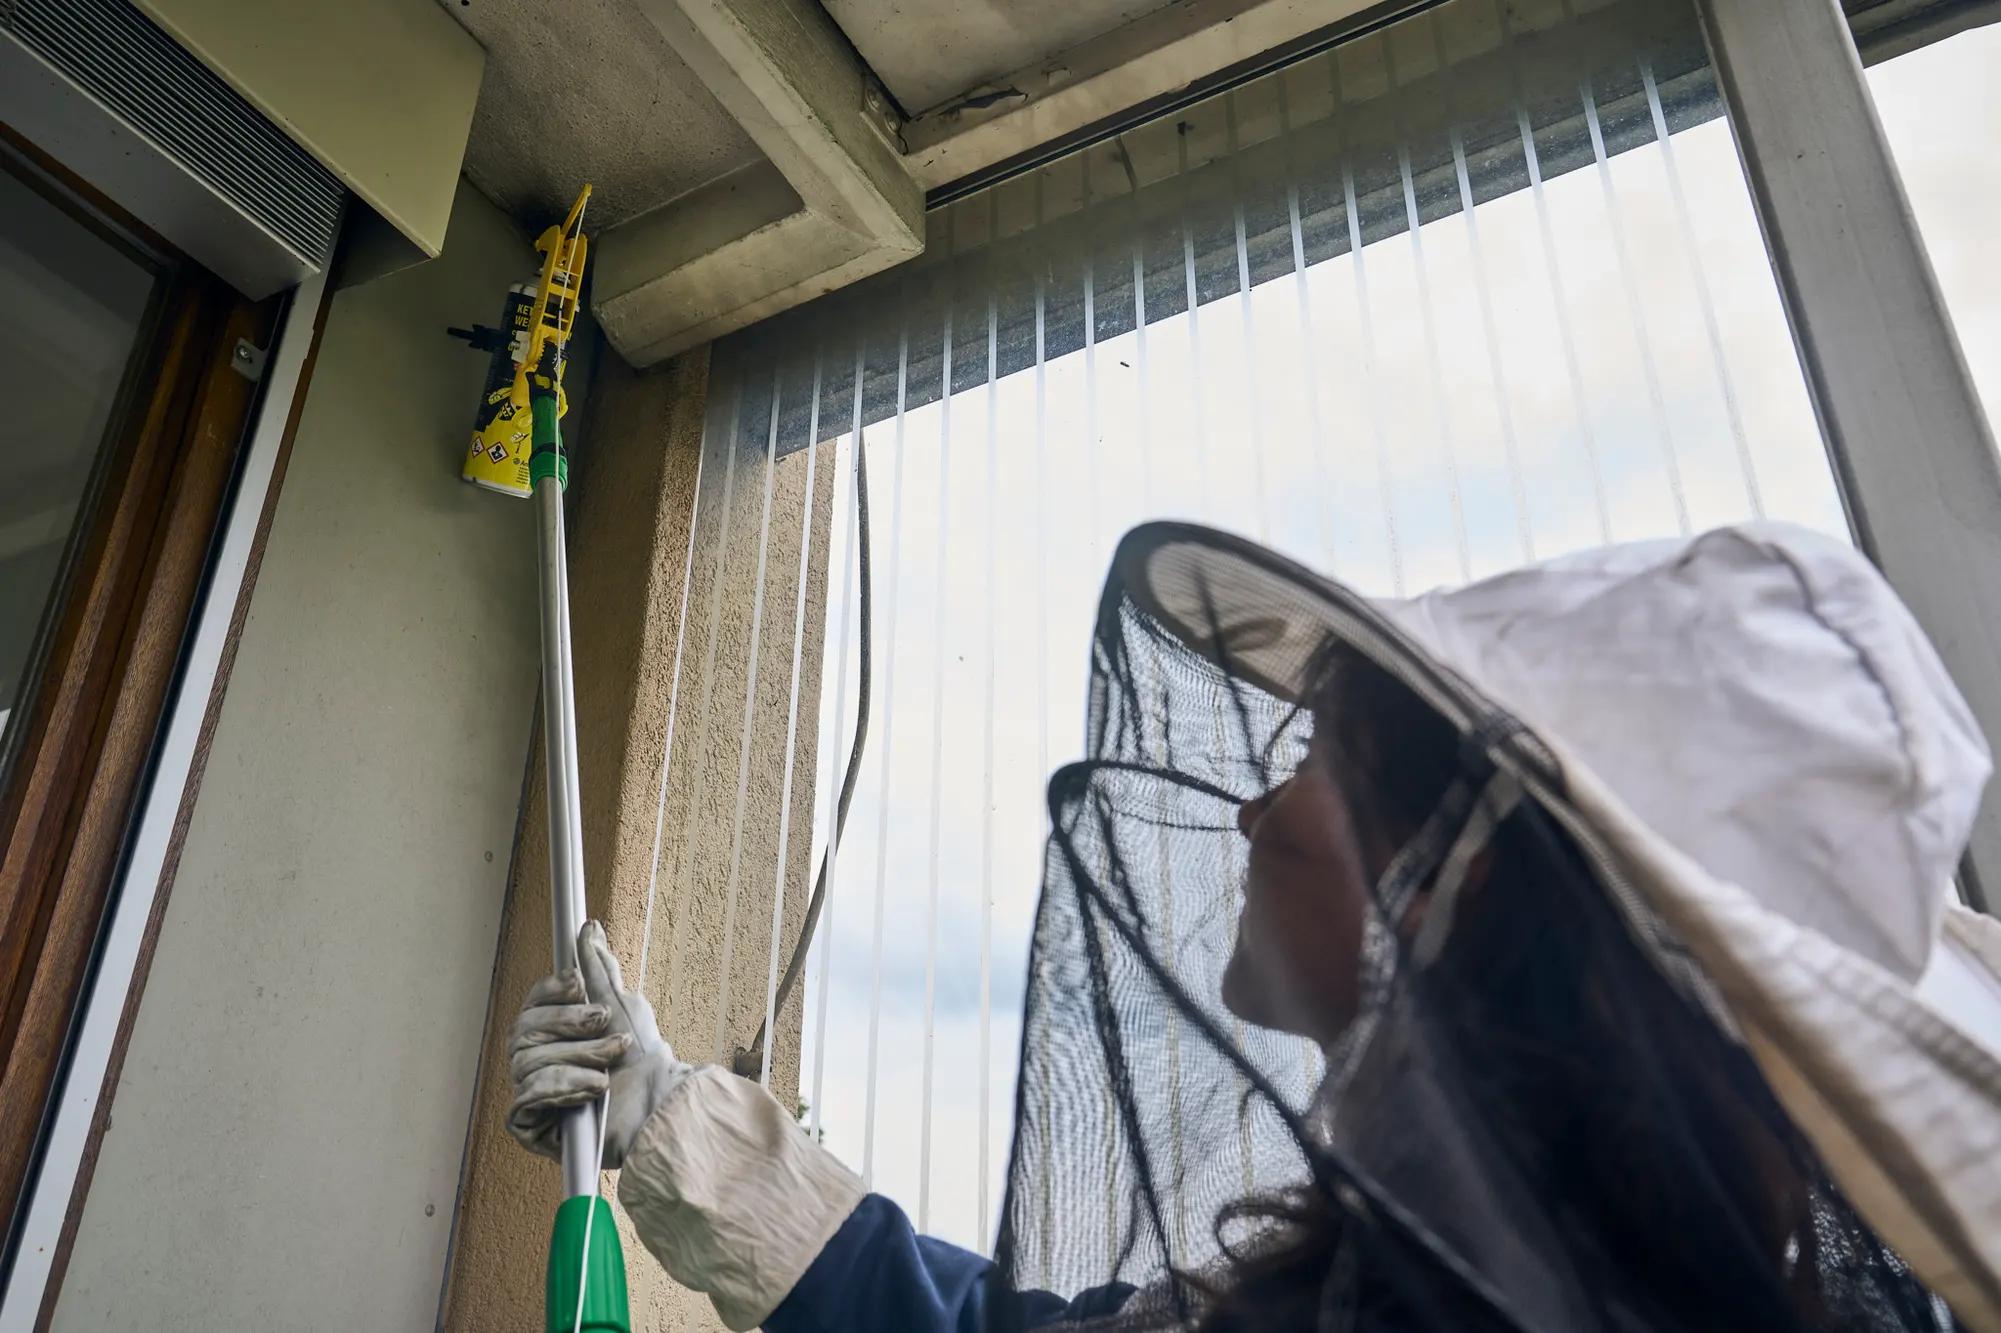 BaZ-Reporterin Vivana Zanetti setzt Insektizide gegen ein Wespennest ein. Bald ist der Boden von toten Wespen bedeckt. Foto von Lucia Hunziker.